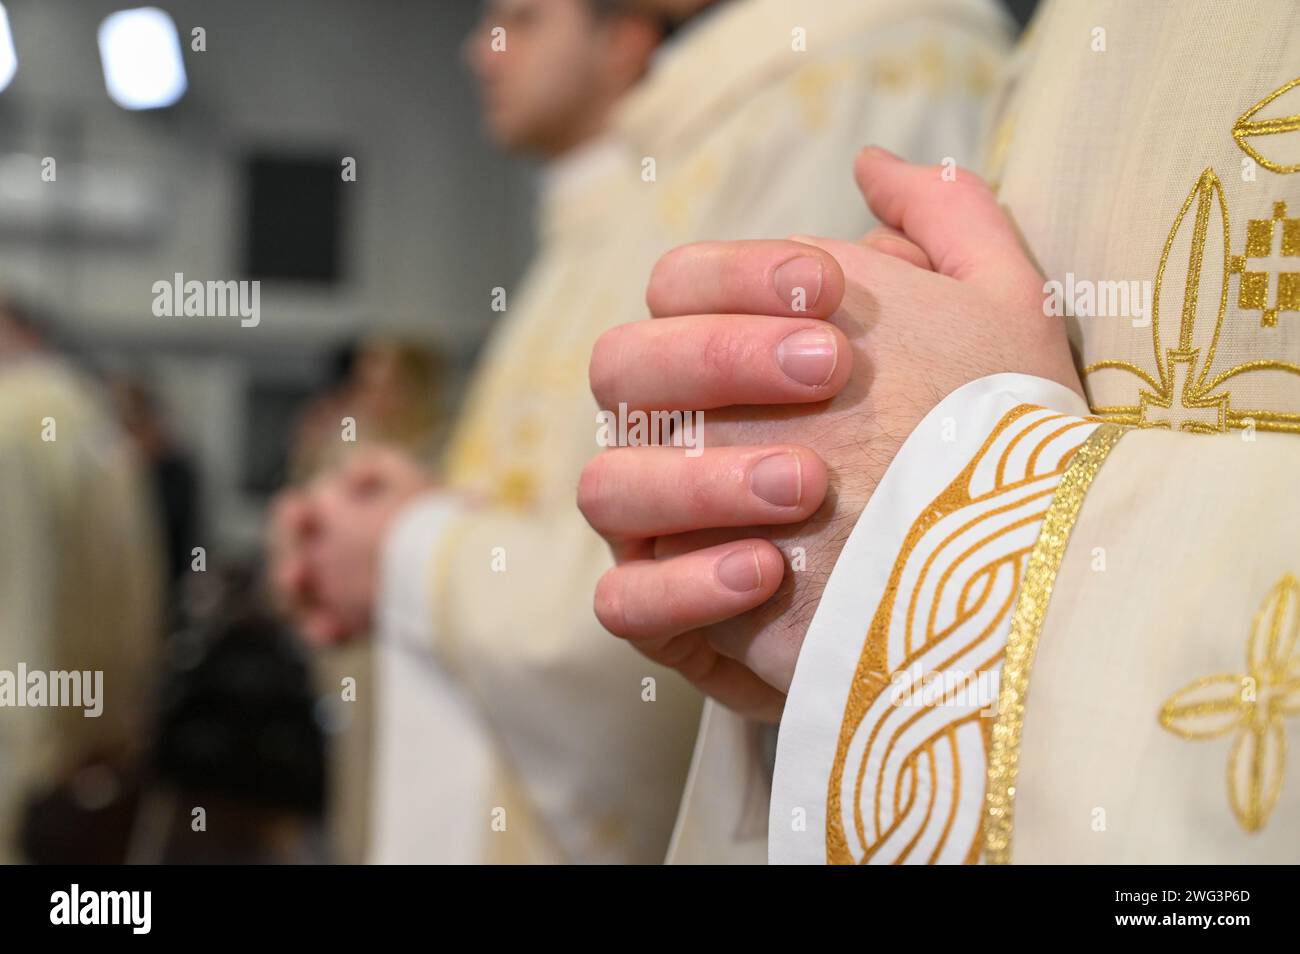 Katholische Priester in liturgischen Gewändern beten mit gefalteten Händen. Hände eines christlichen Mannes, der in der Kathedrale betet. Mitternachtsmesse in der Kirche. Stockfoto